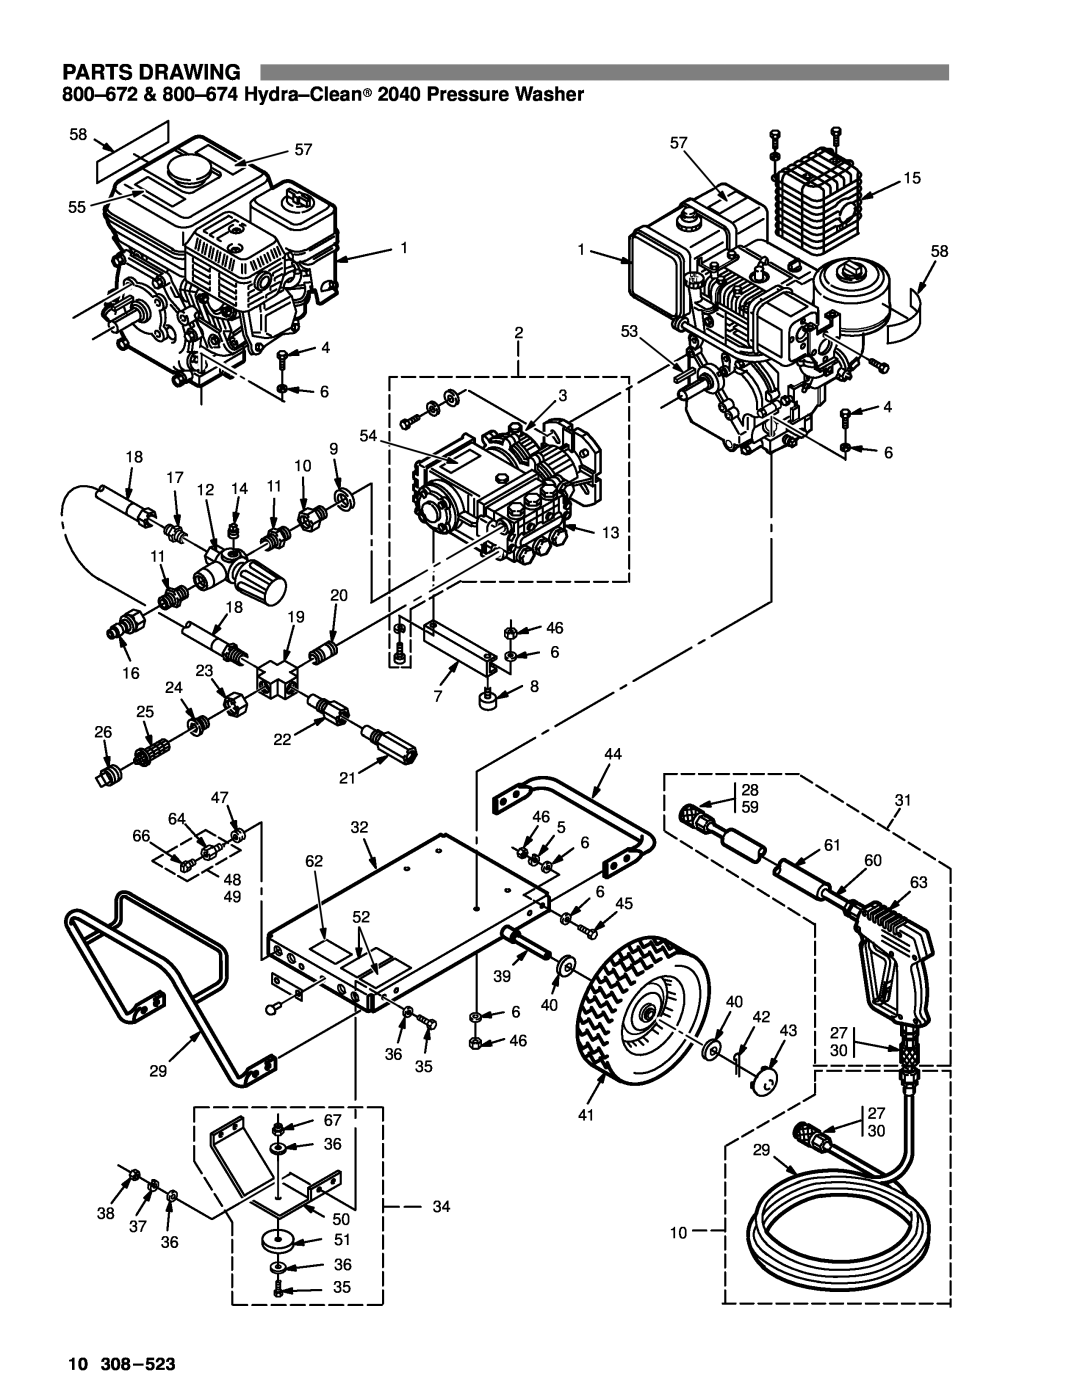 Graco Inc 308-523, 800-672, 800-674, 800-671, 800-670 manual Parts Drawing 